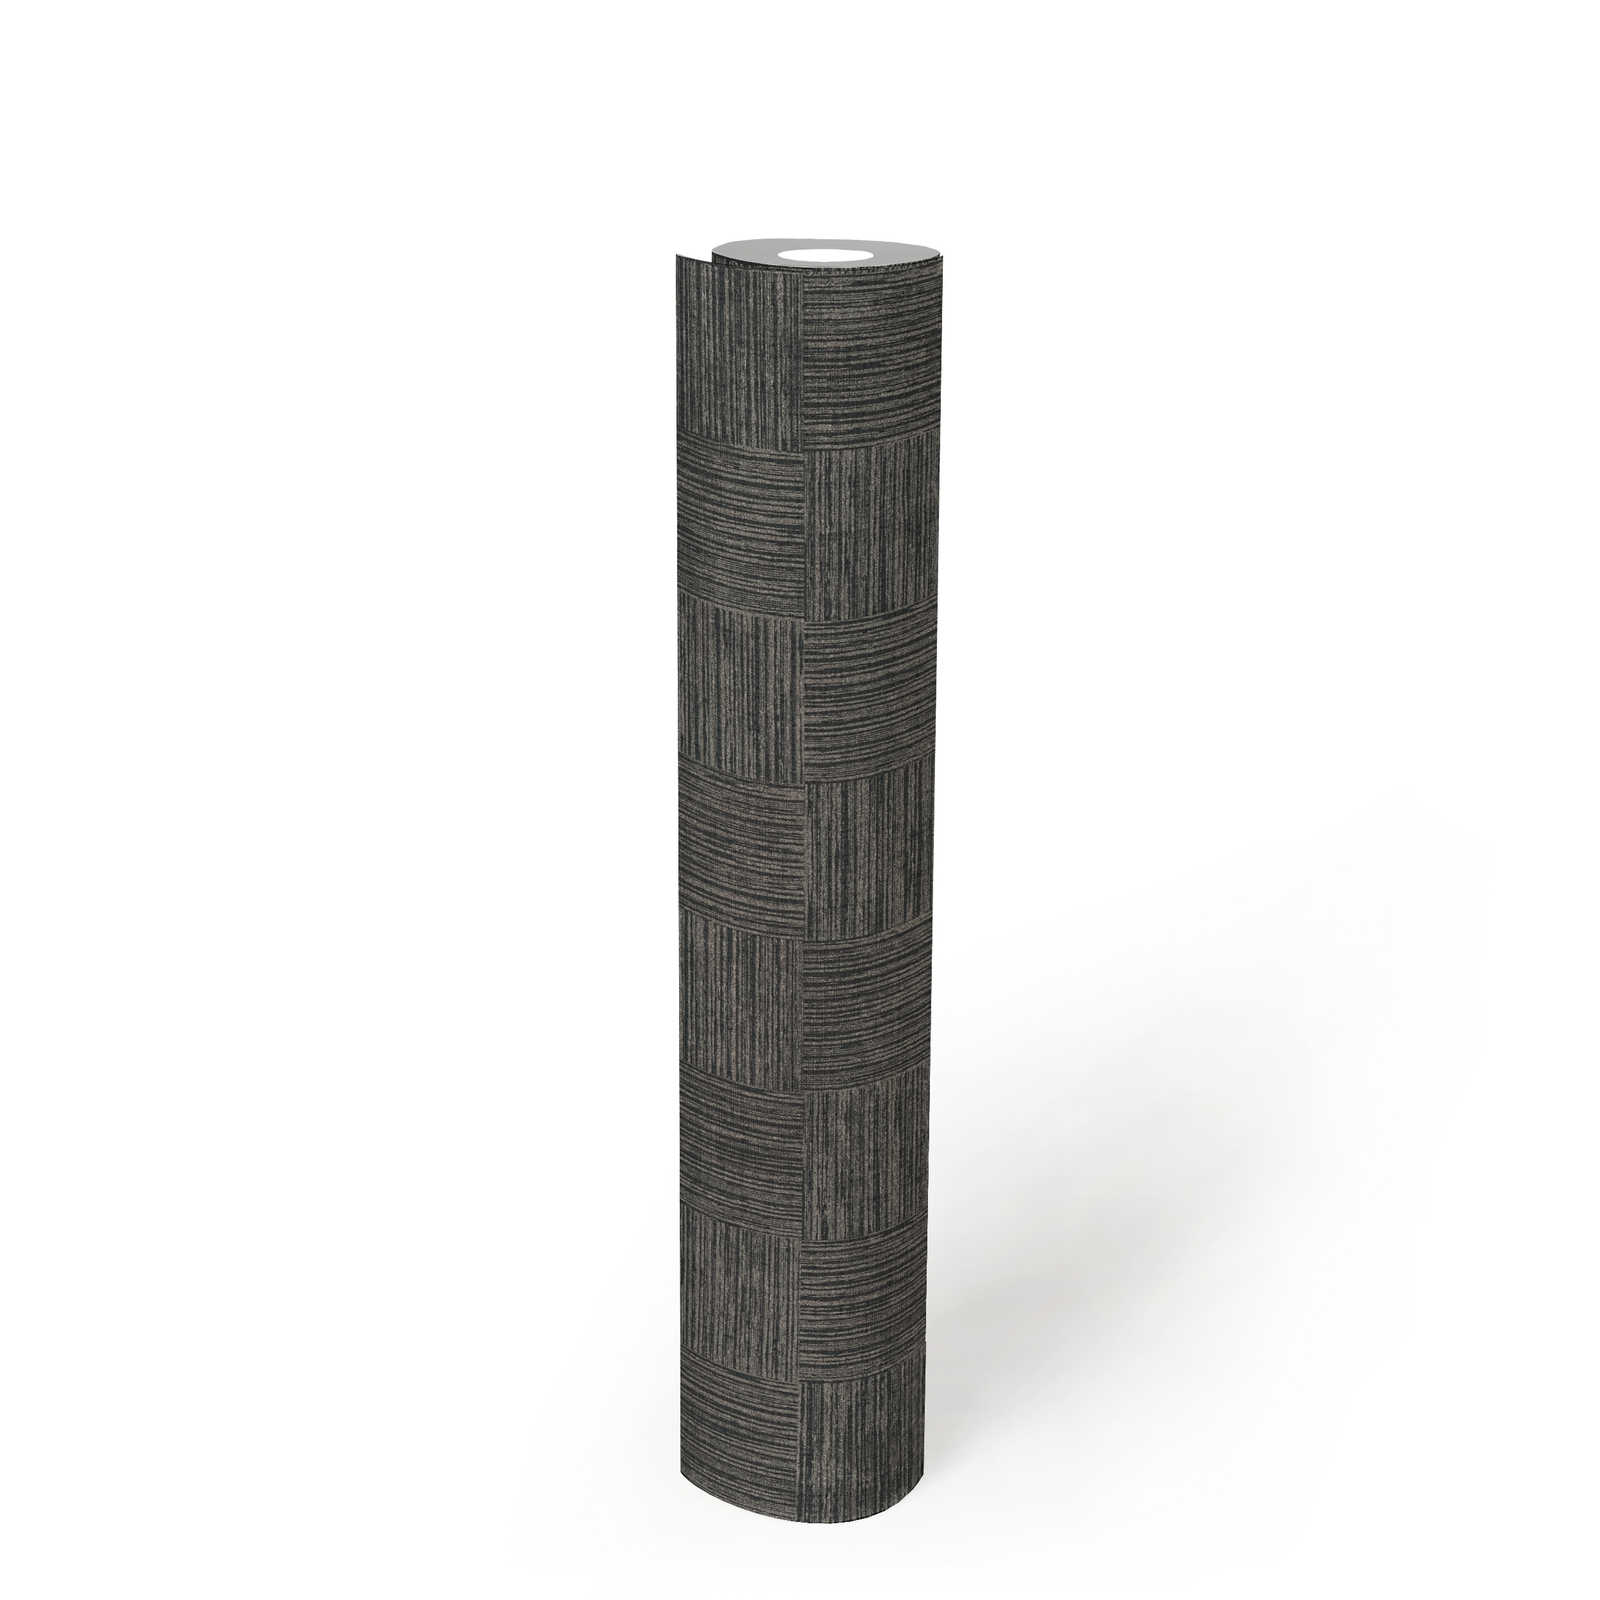             Behang met houteffect gevlekte structuur - metallic, zwart
        